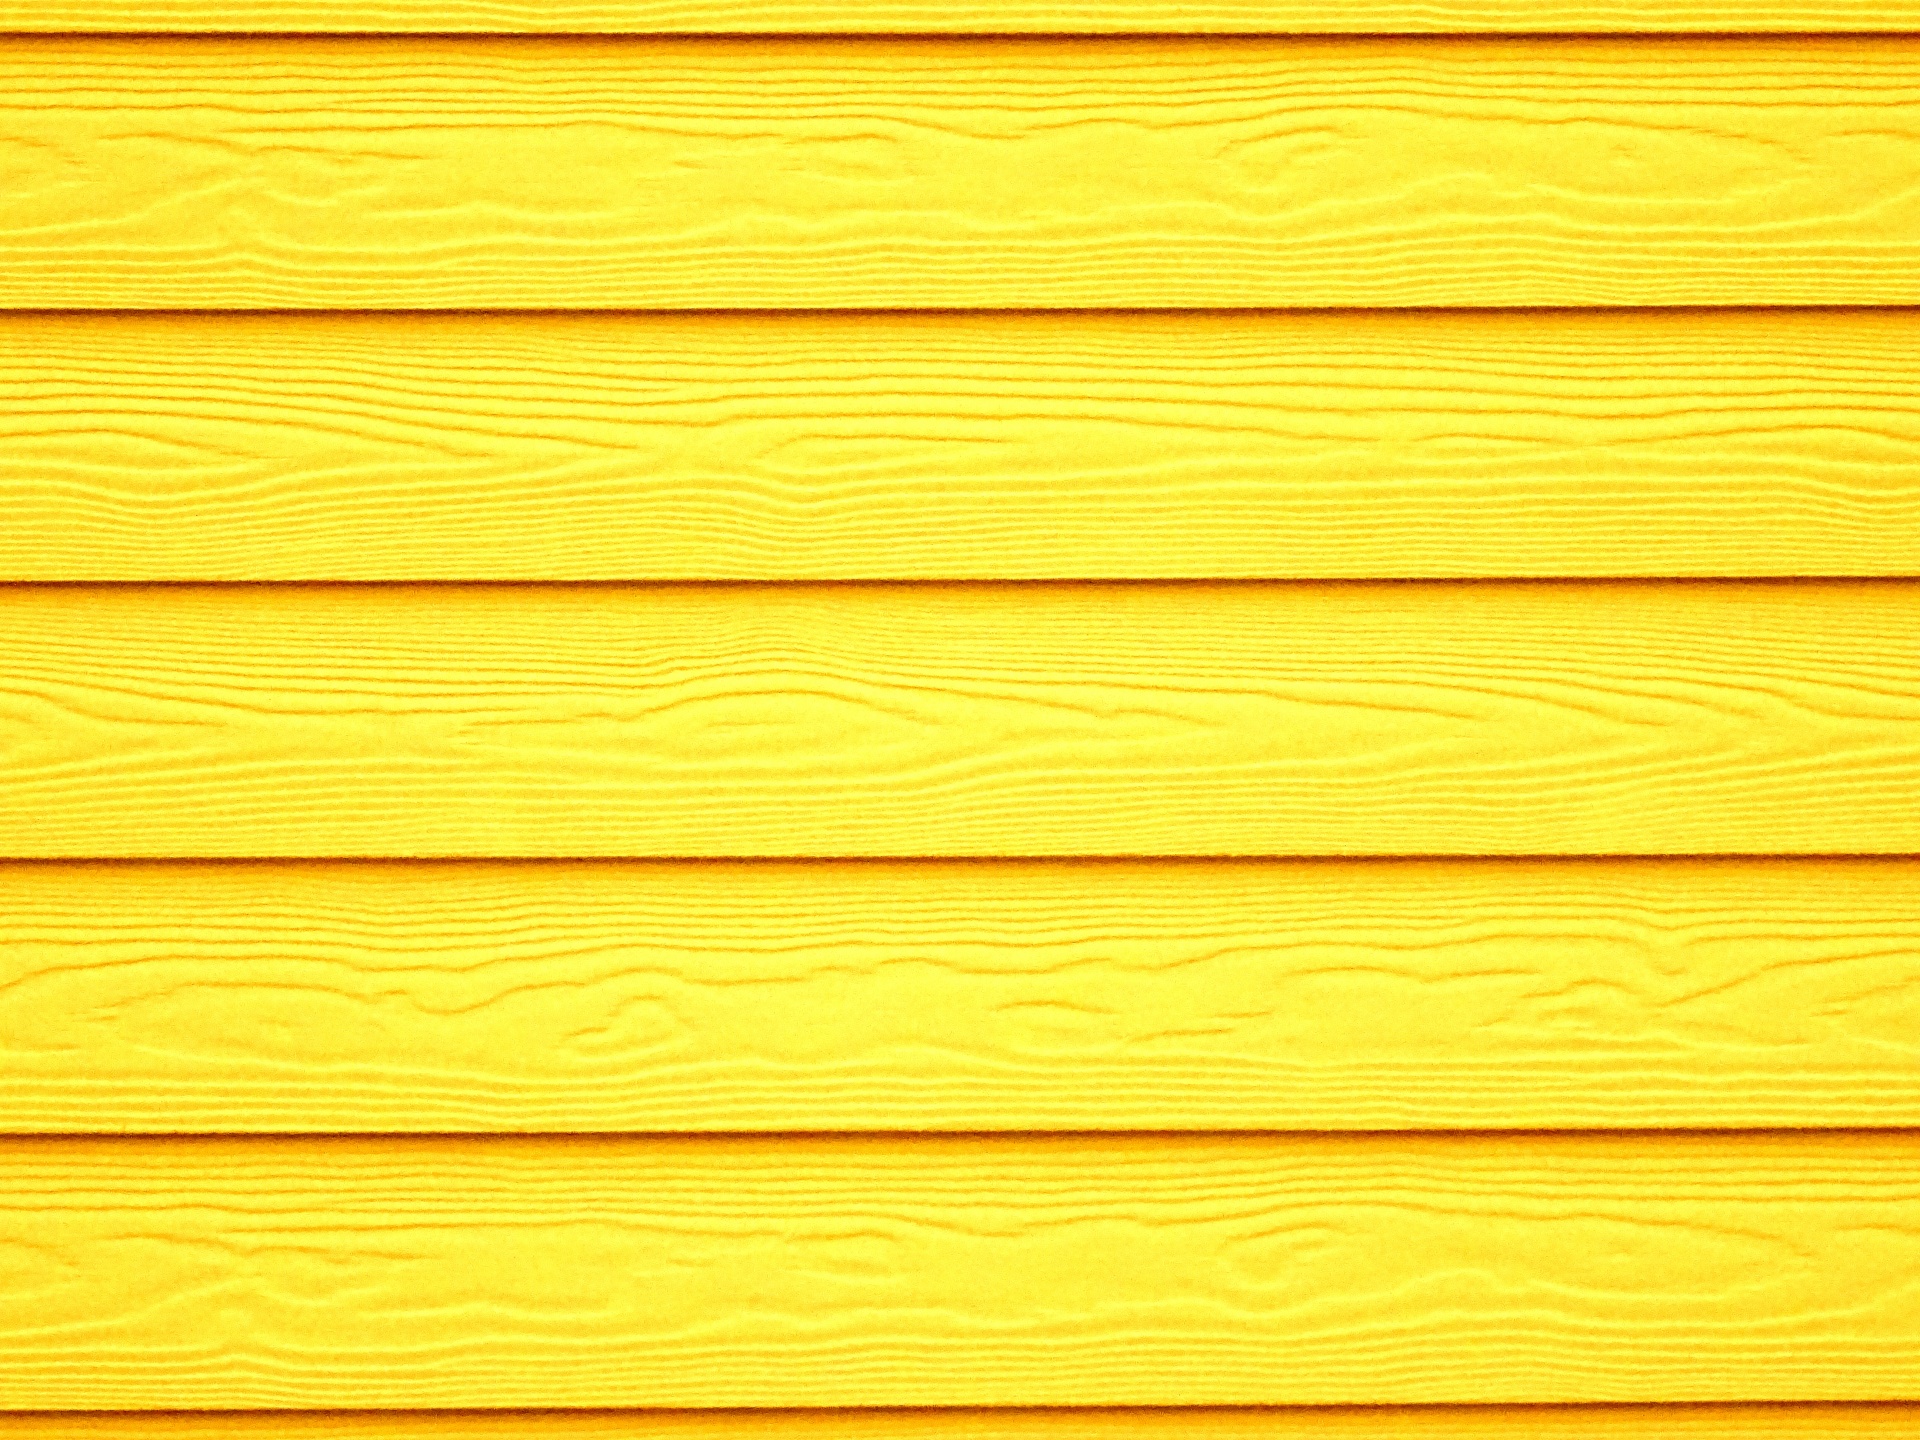 Gỗ màu vàng luôn tạo nên sự ấn tượng với mọi người, và hình ảnh nền gỗ màu vàng nhạt này không phải là ngoại lệ. Với kết cấu mềm mại và màu sắc đa dạng, hình ảnh này sẽ làm nổi bật bất kỳ không gian nào. Hãy xem và cảm nhận!